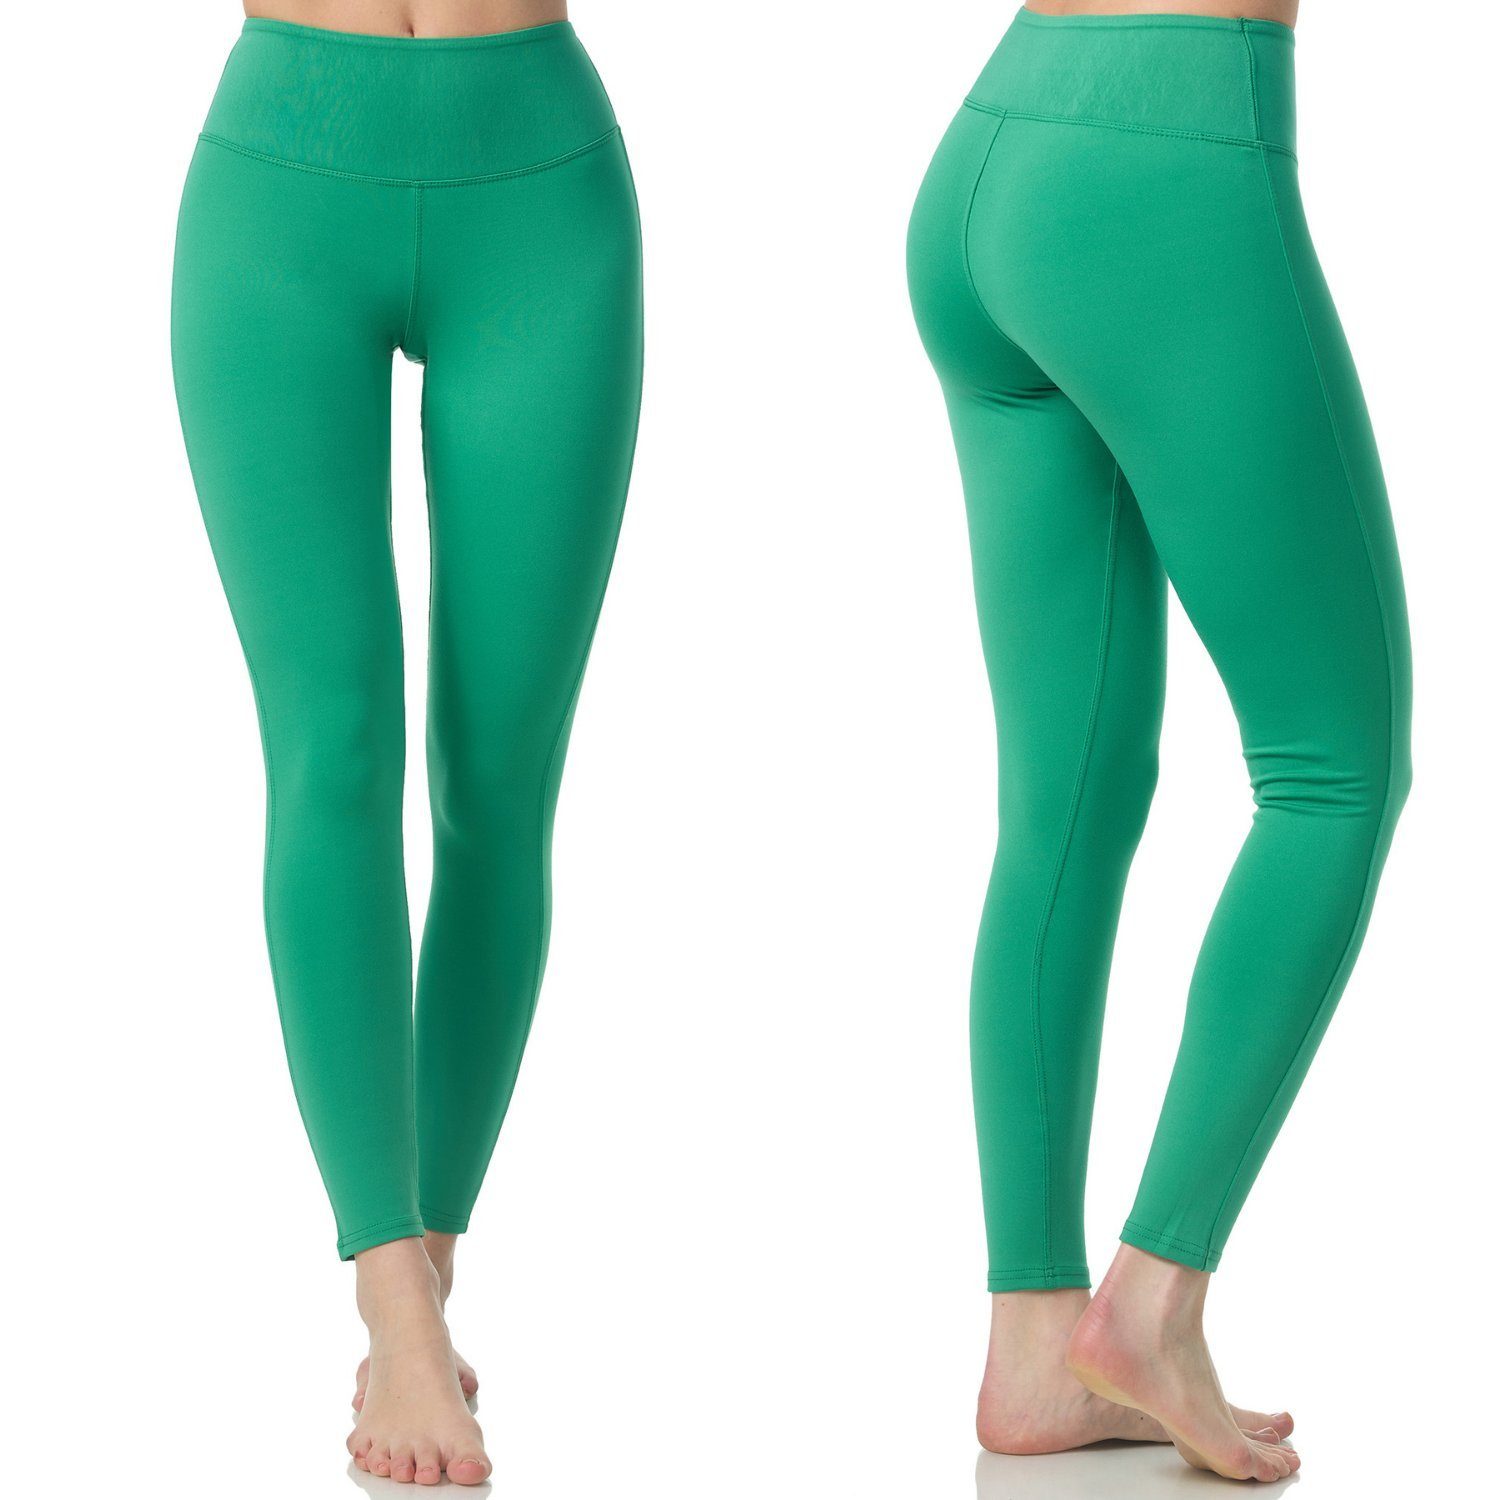 Frentree Leggings für Damen, Lange Sport Leggings, Yoga Hose in vielen Farben, Laufhose mit hohem Komfort, High Waist Grün